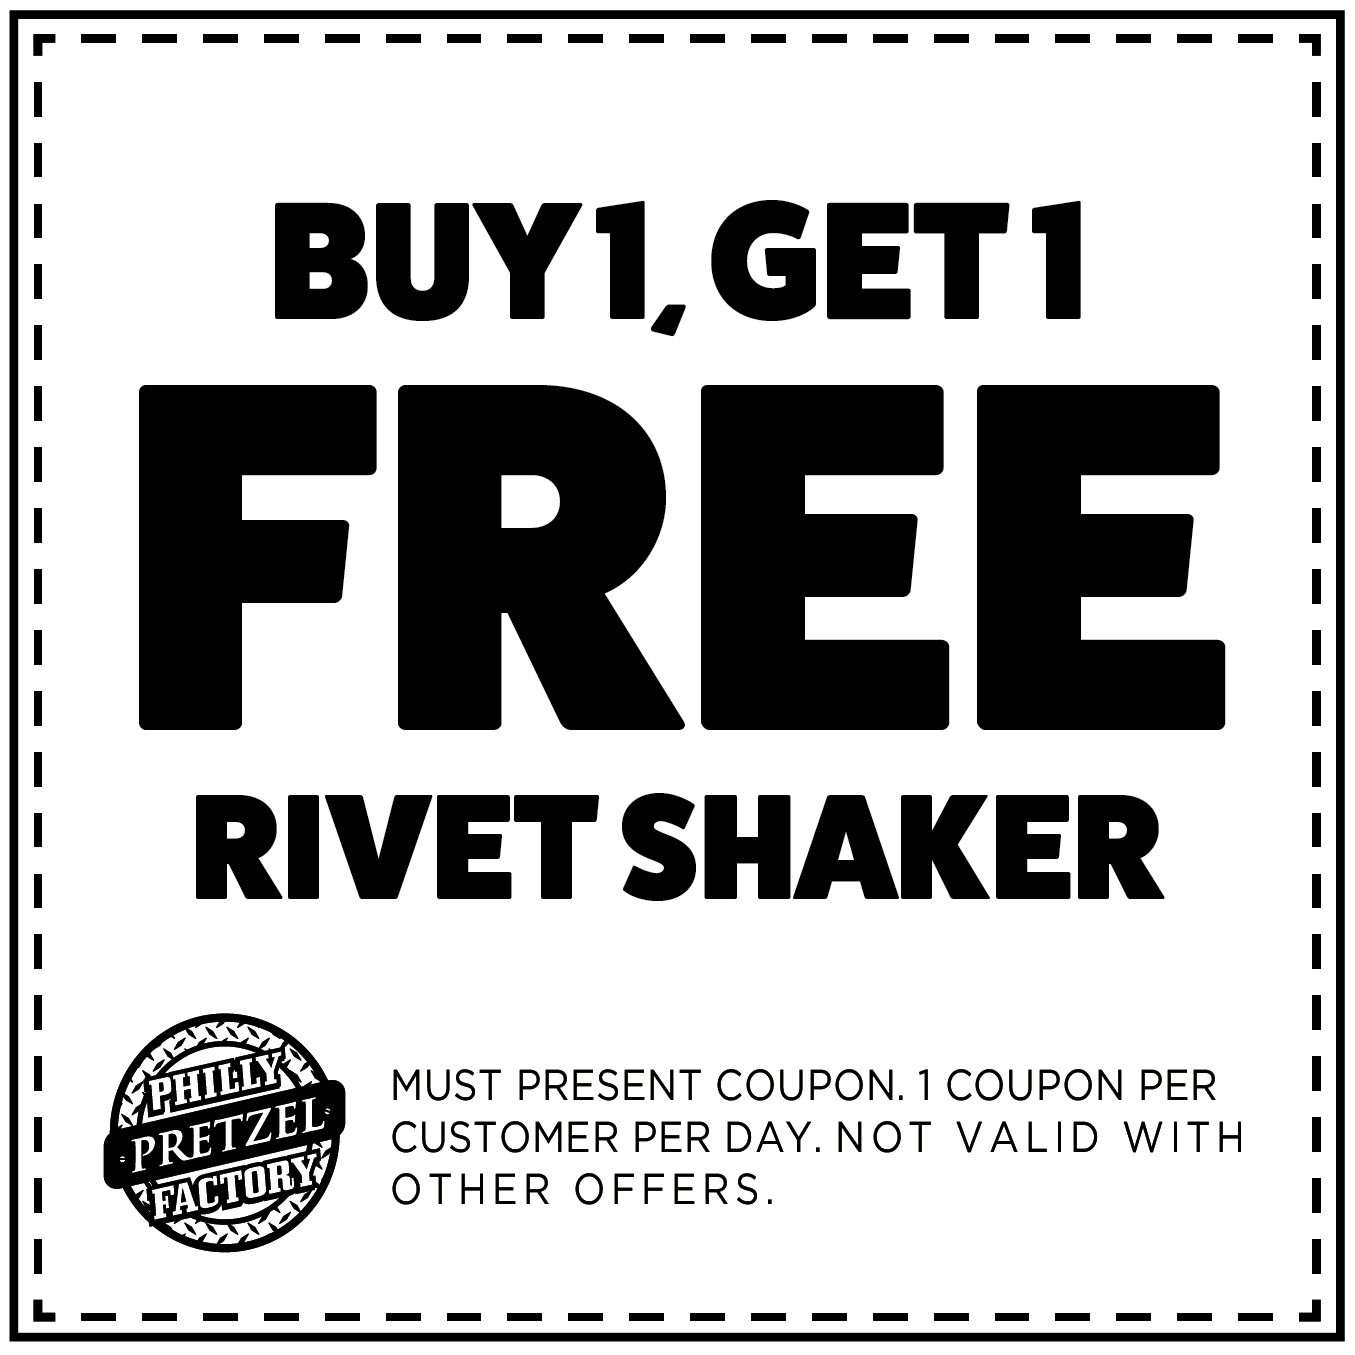 Buy 1, Get 1 Free Rivet Shaker